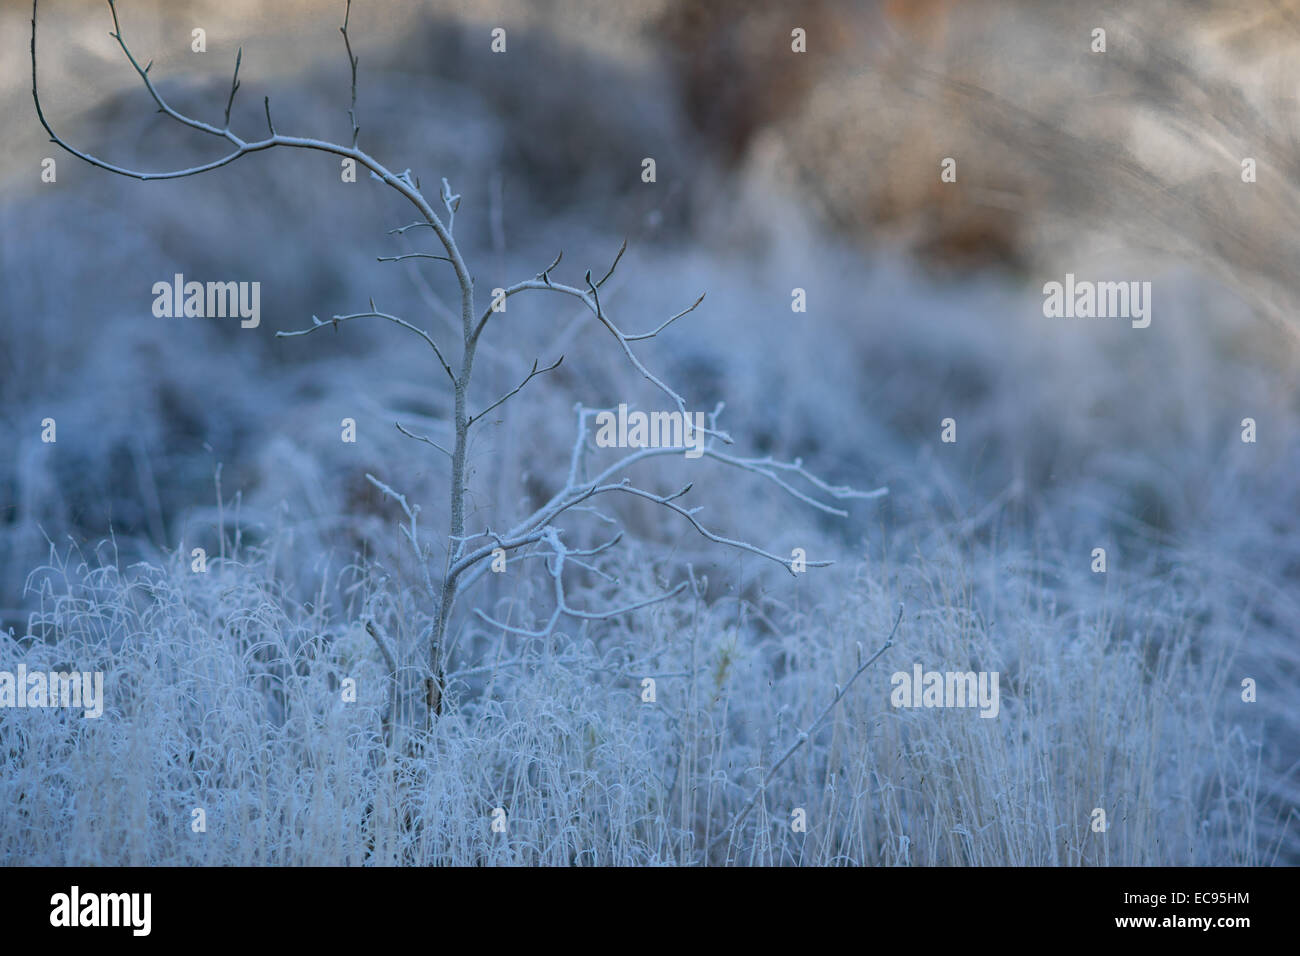 Deshojado bush y marchito helada cubierta de hierba fresca de frío invierno frío Foto de stock